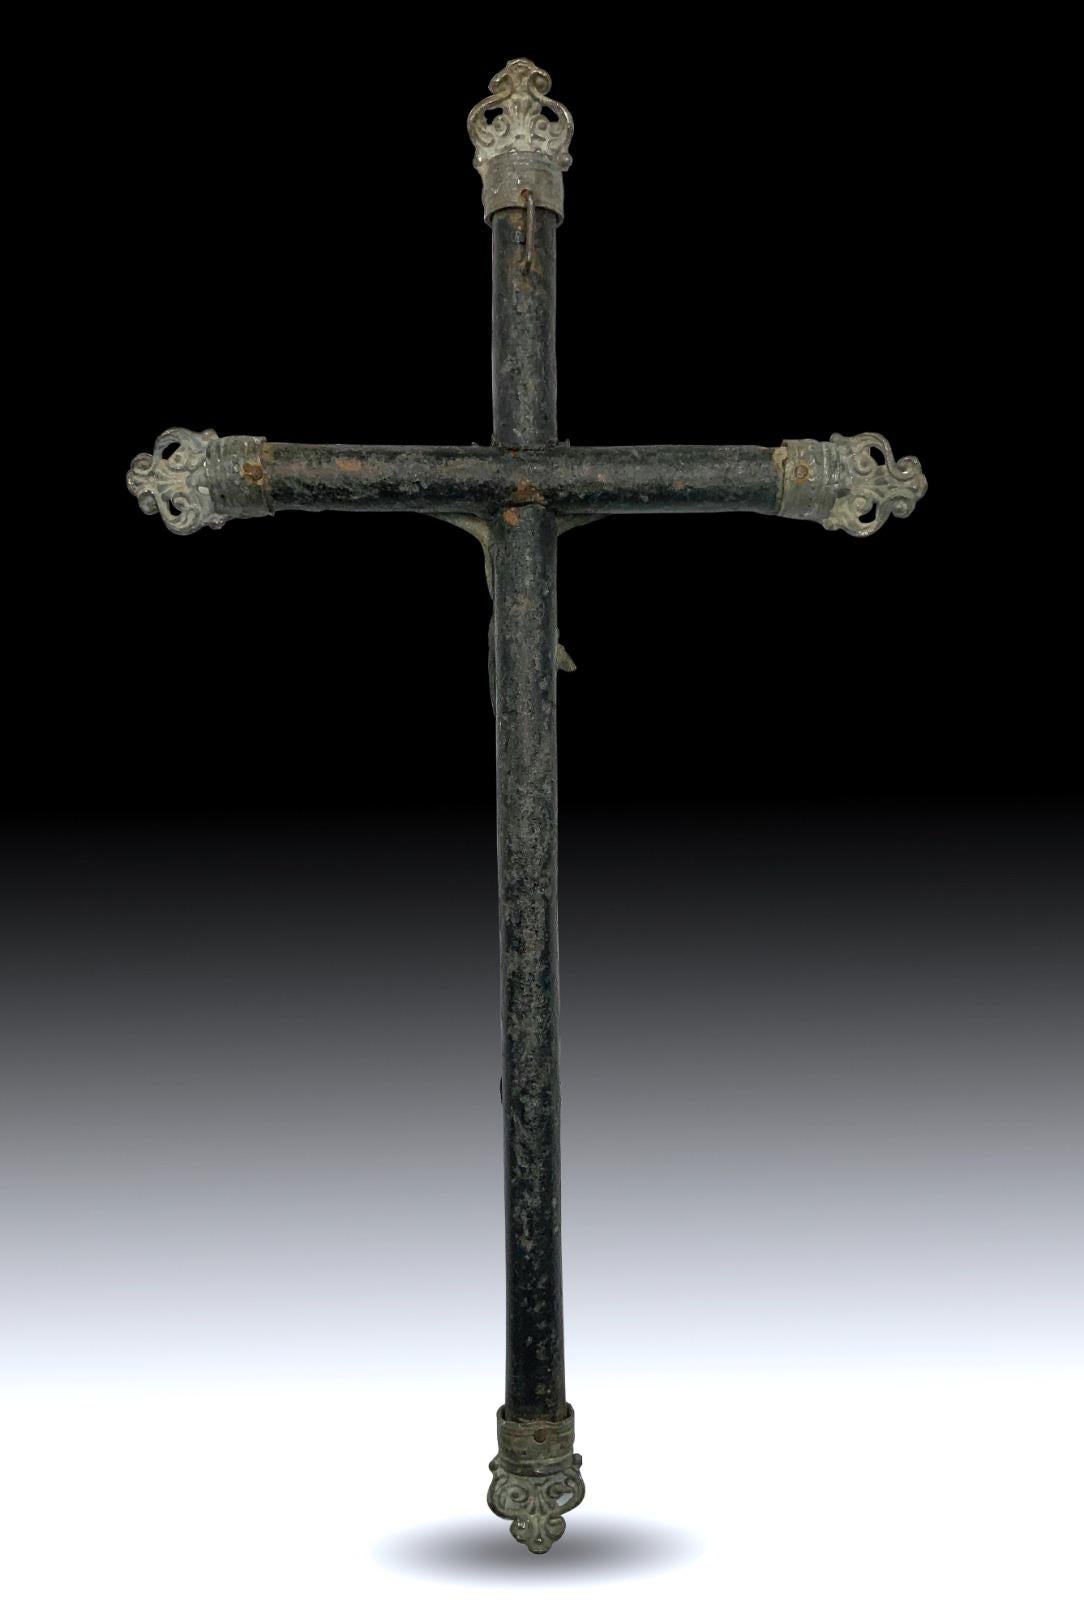 Kreuz aus dem 19. Jahrhundert.
Schönes Kreuz aus dem XIX. Jahrhundert aus Olivenholz. Maße: 23x12 cm. In gutem Zustand.
Guter Zustand.